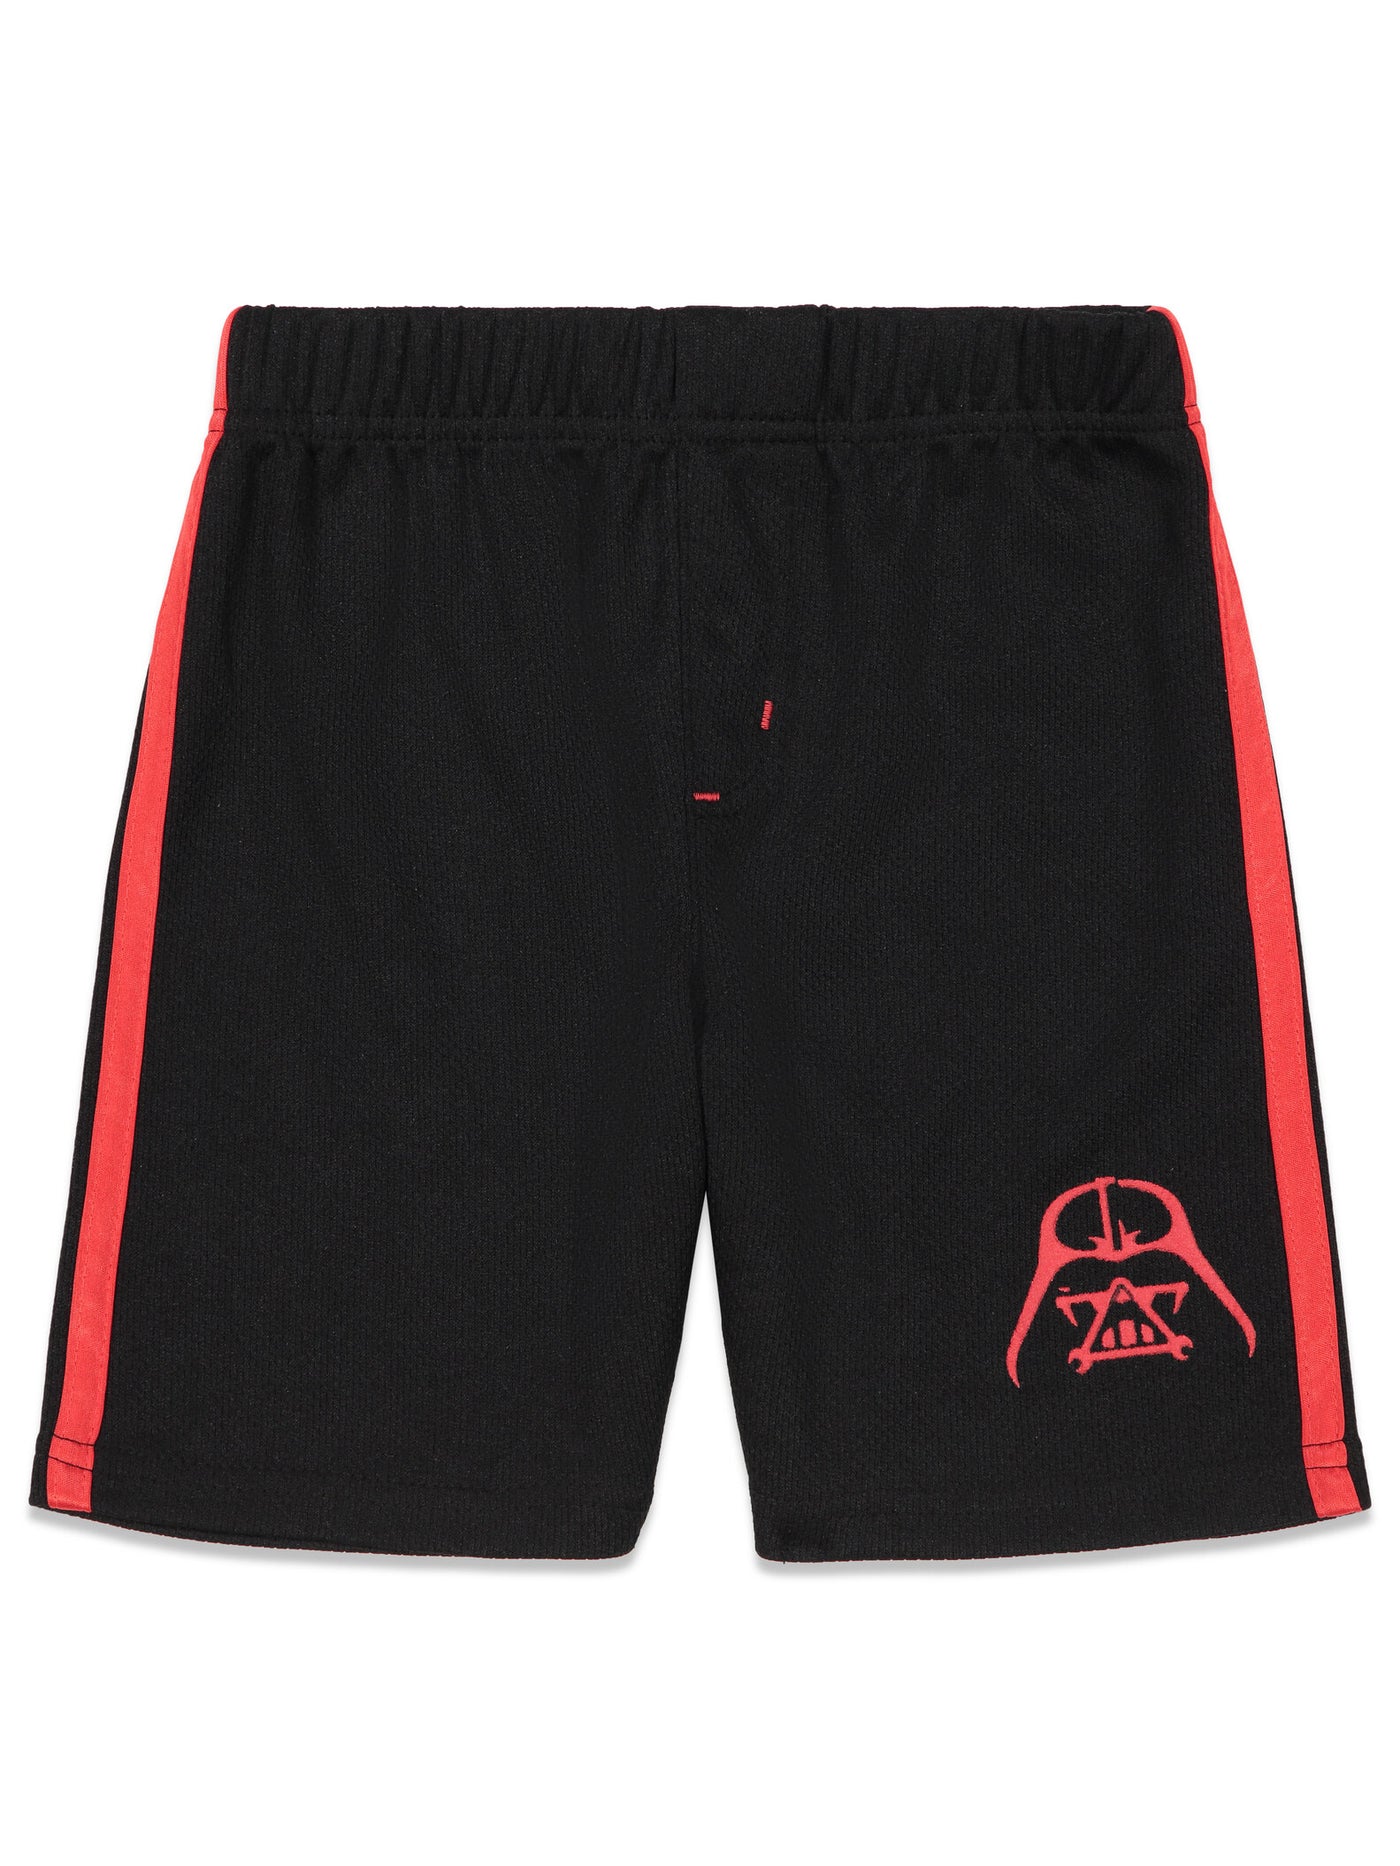 Conjunto de camiseta y pantalones cortos con capa de Darth Vader de Star Wars